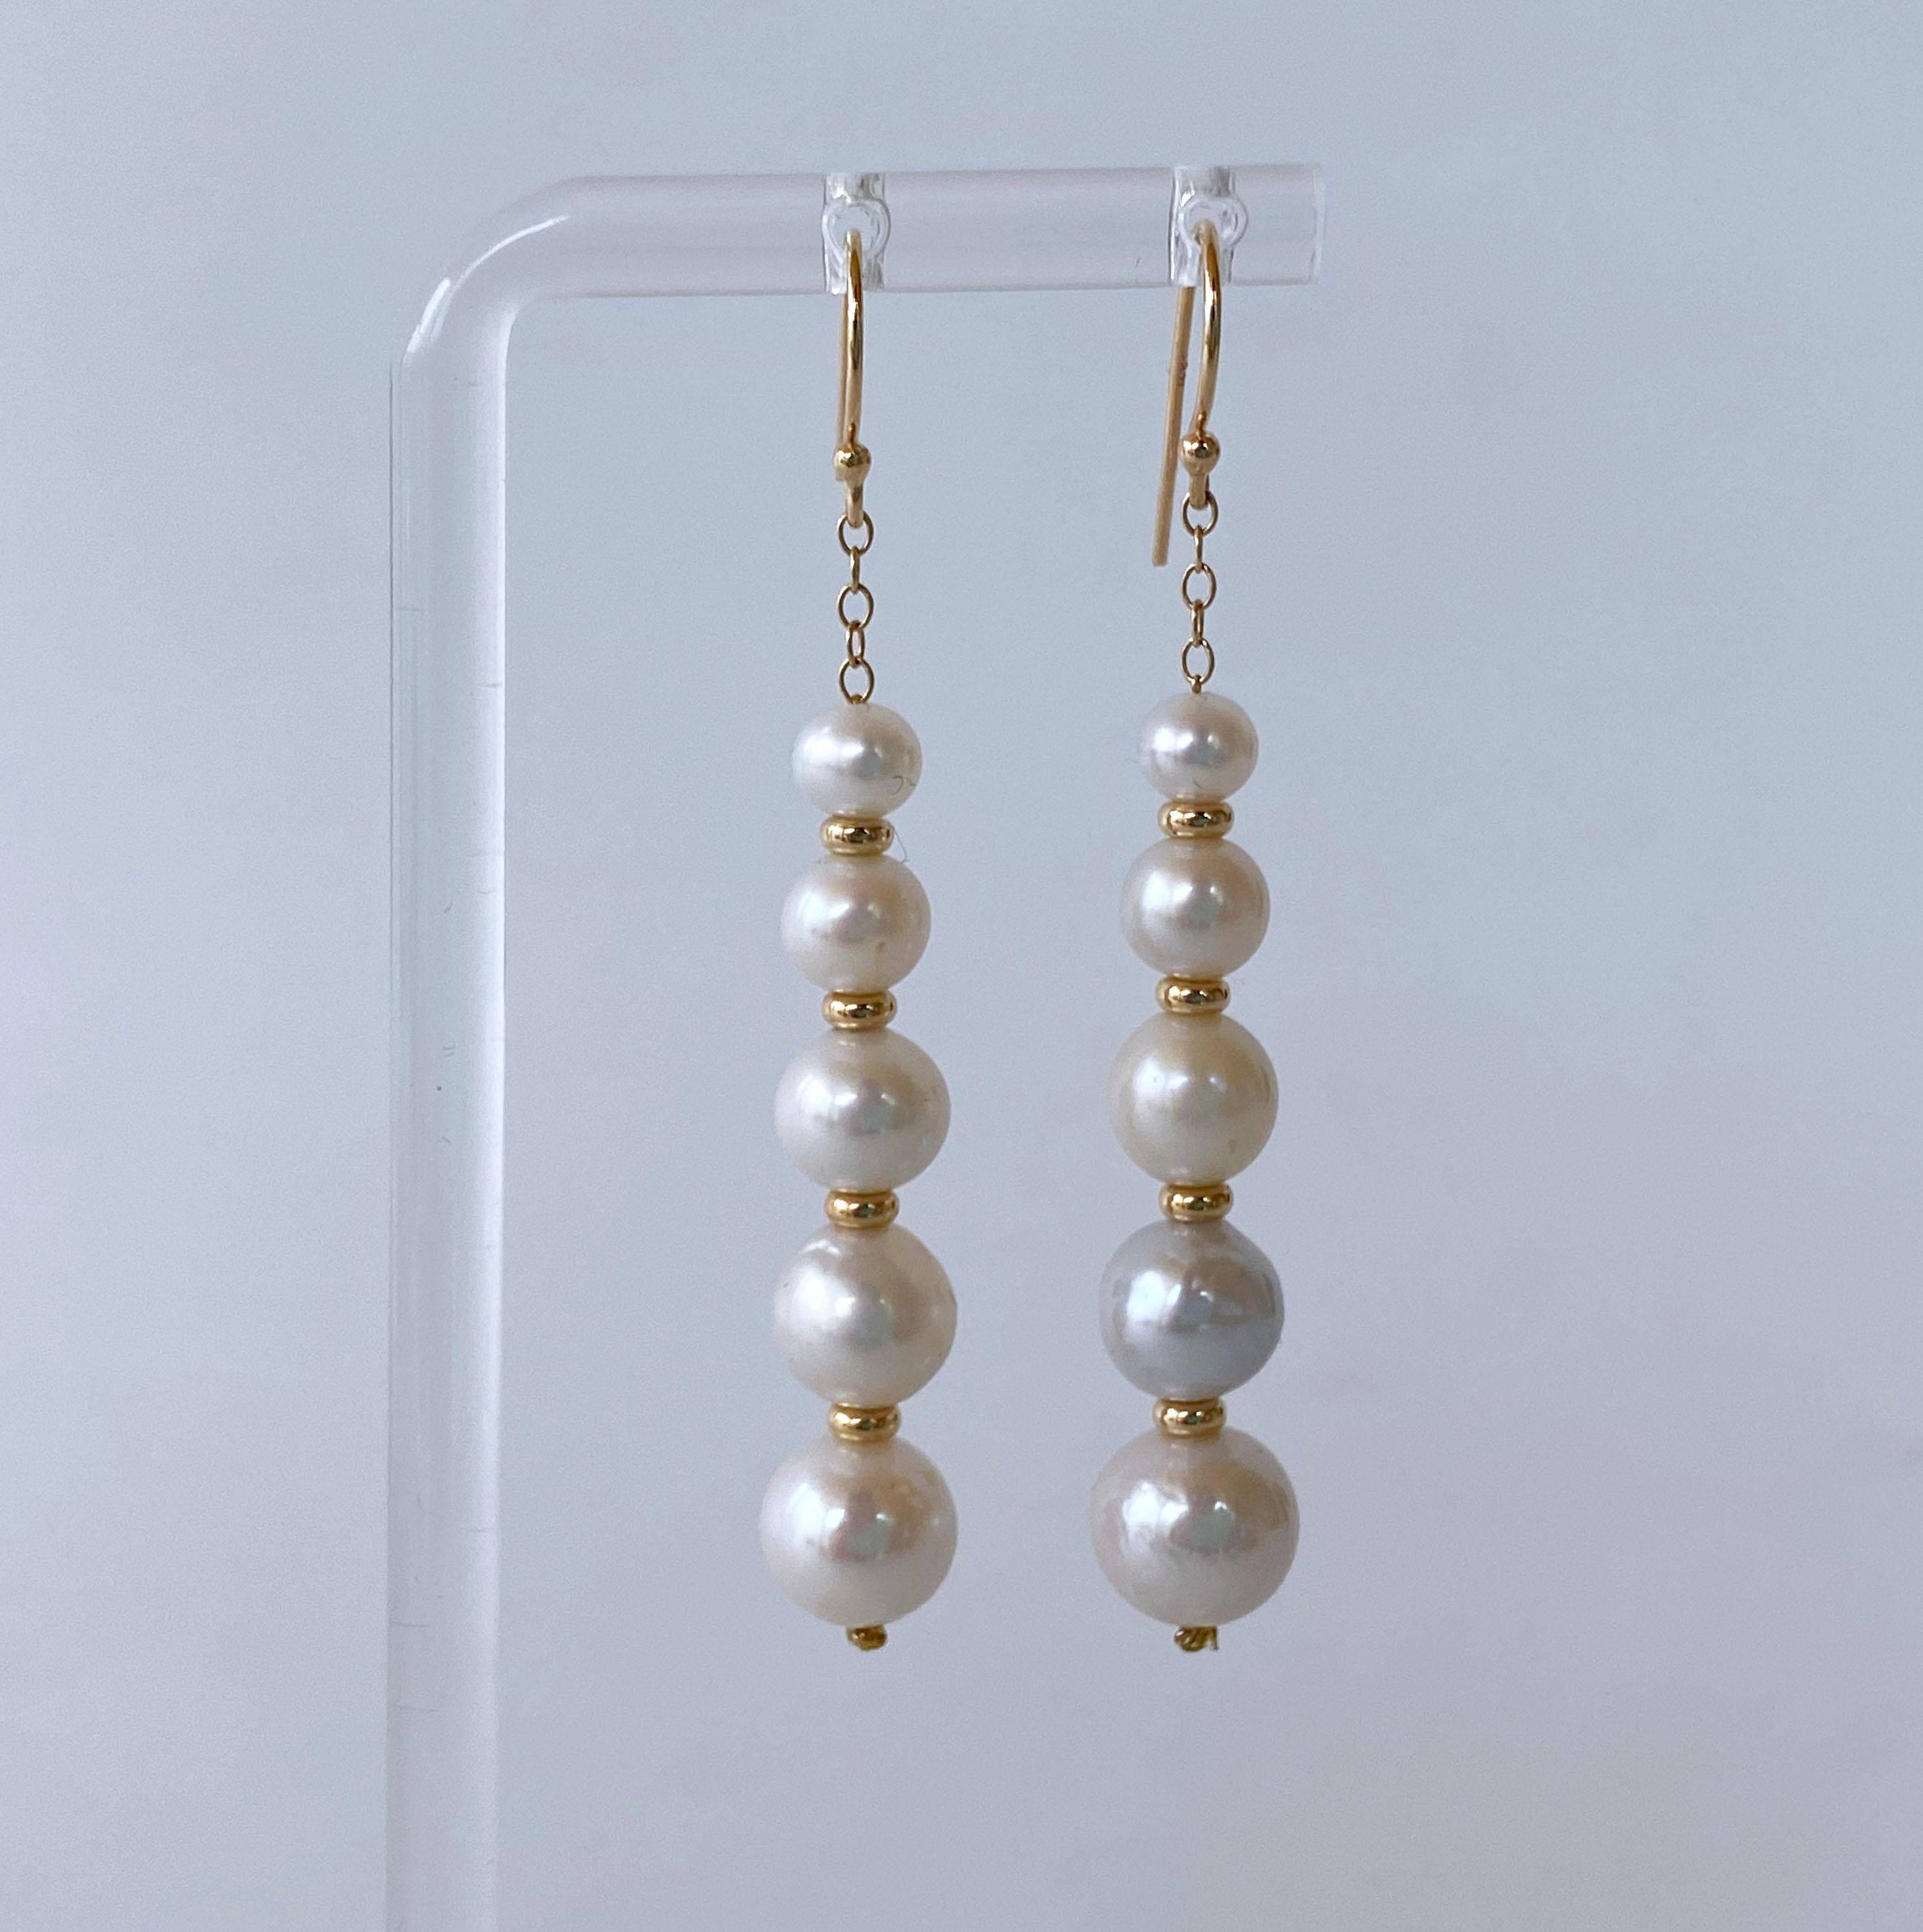 Magnifique et élégante paire d'Eleg par Marina J. Cette paire est faite avec une chaîne, des crochets et des perles en or jaune 14k. Une rangée de perles de taille graduelle est suspendue à une chaîne en or jaune 14k. Les perles blanches présentent